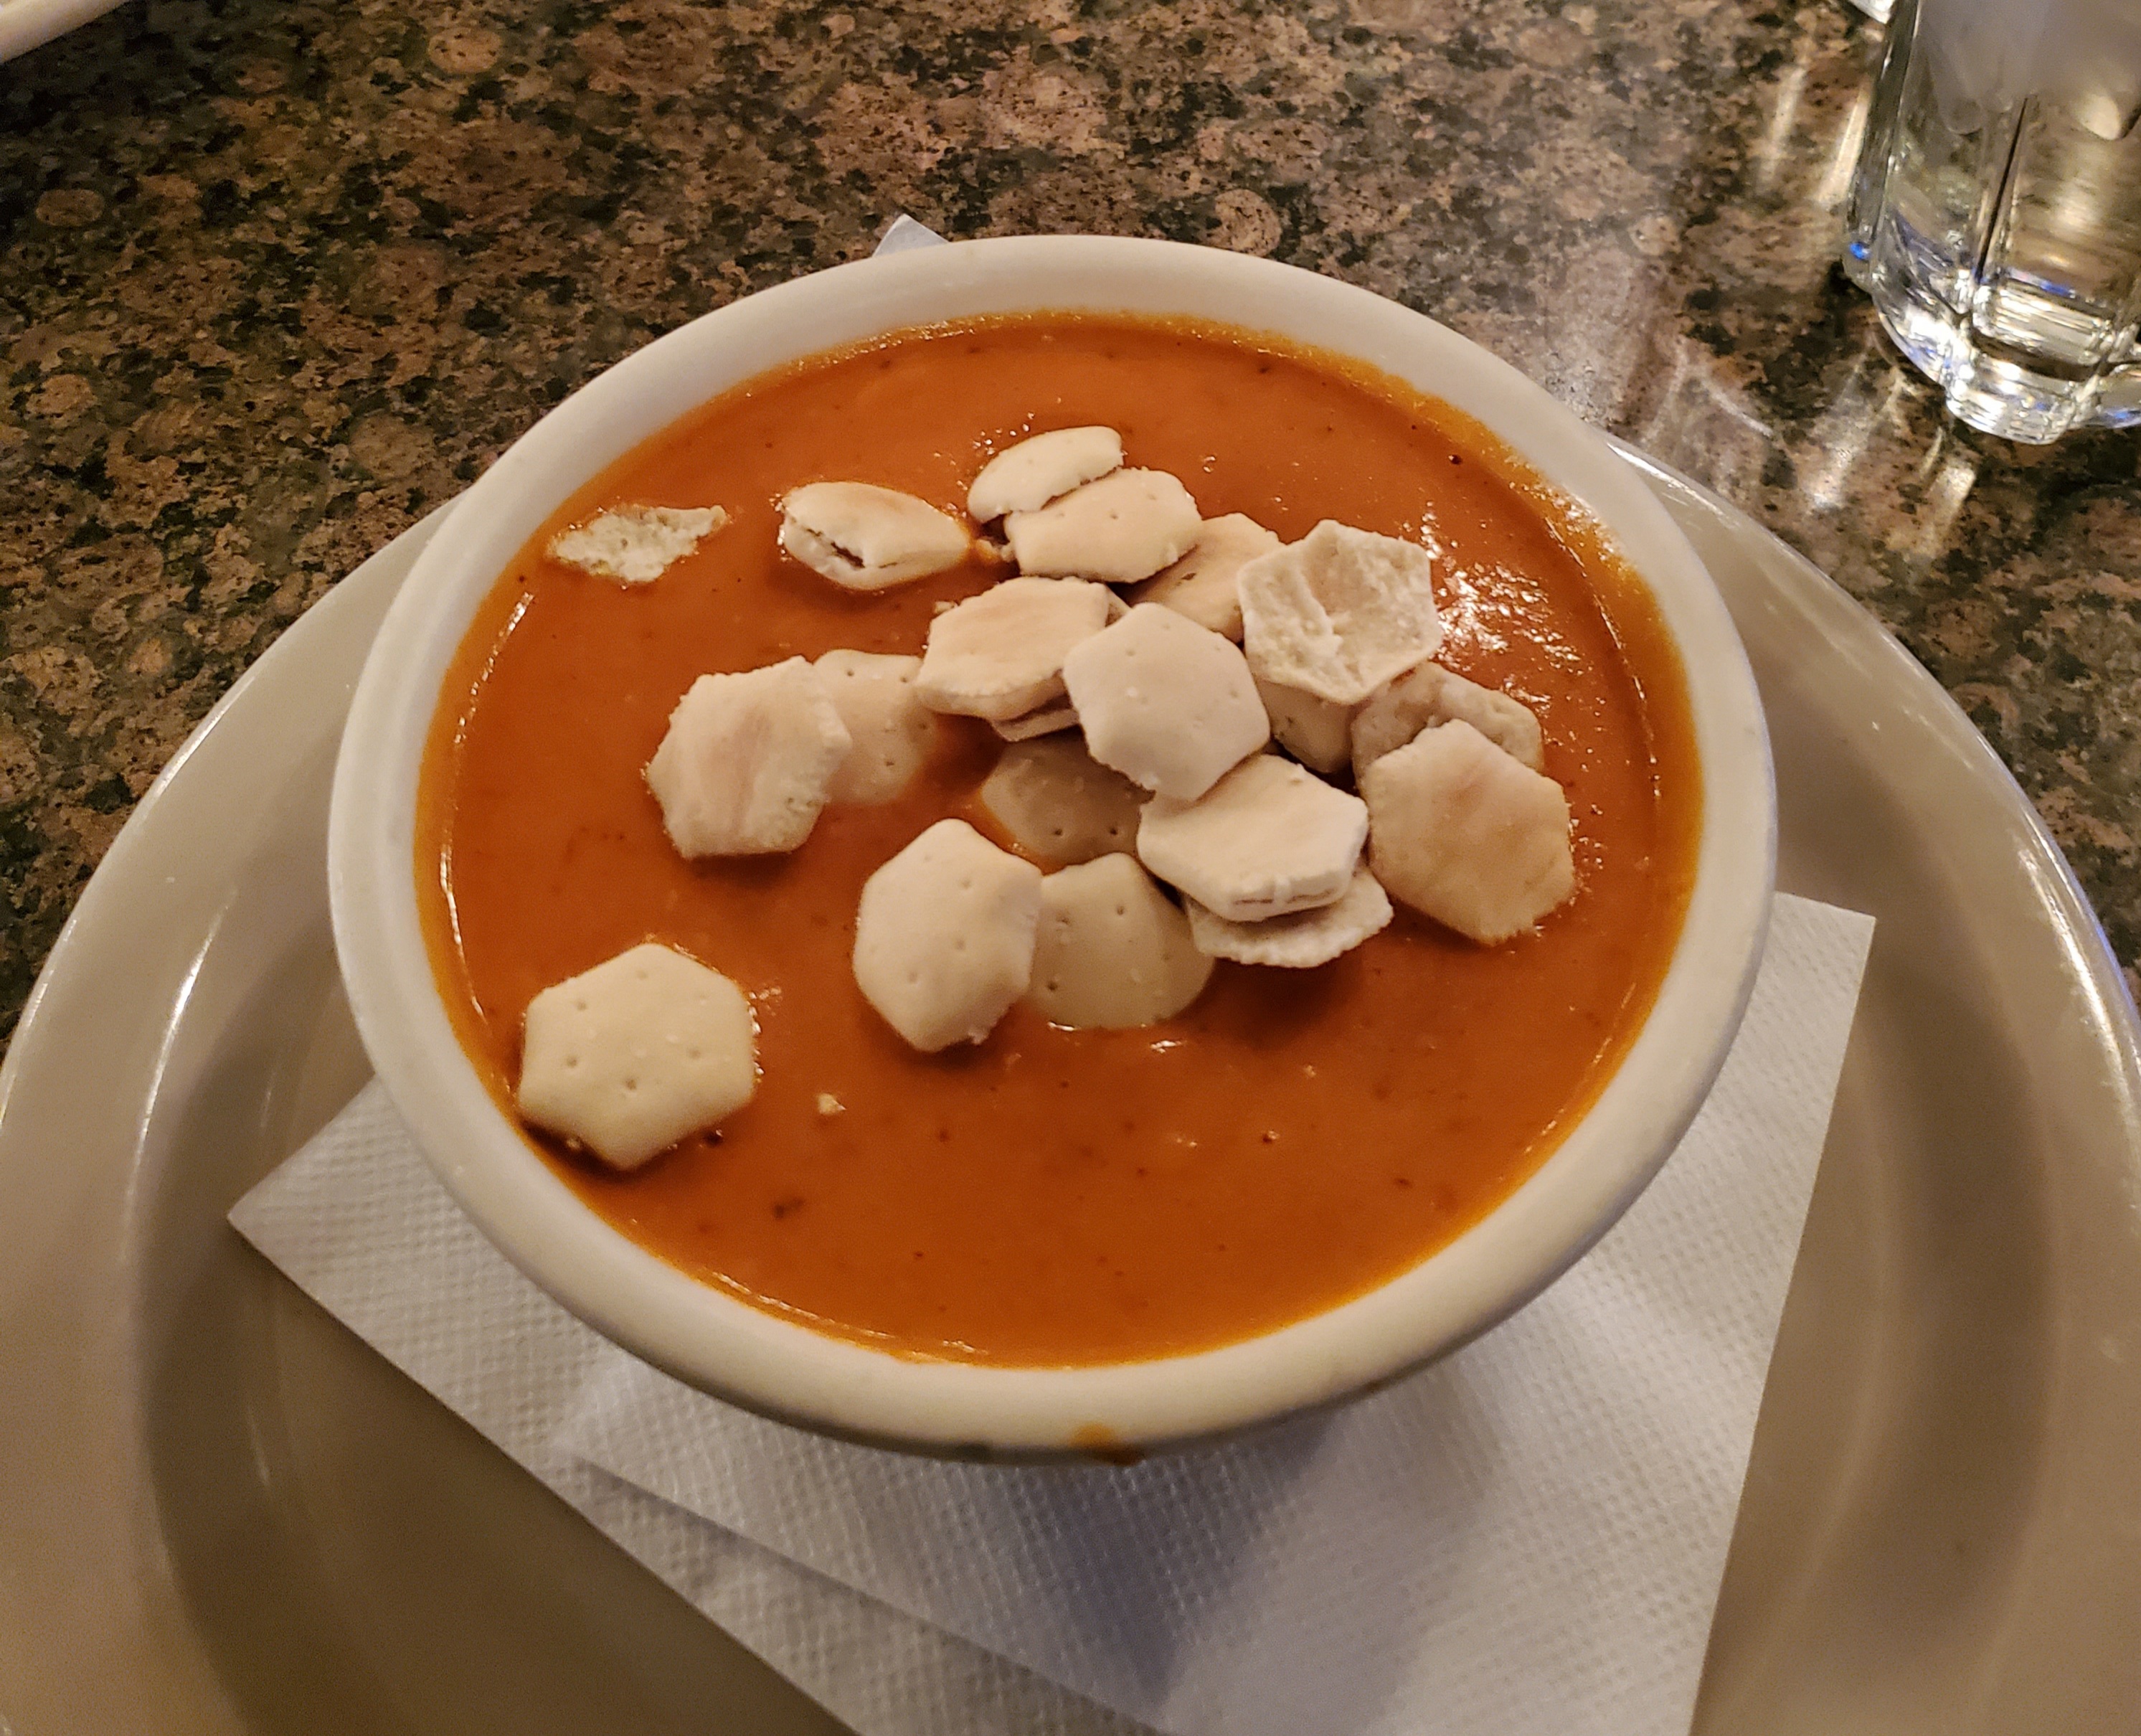 Five soups for soup season